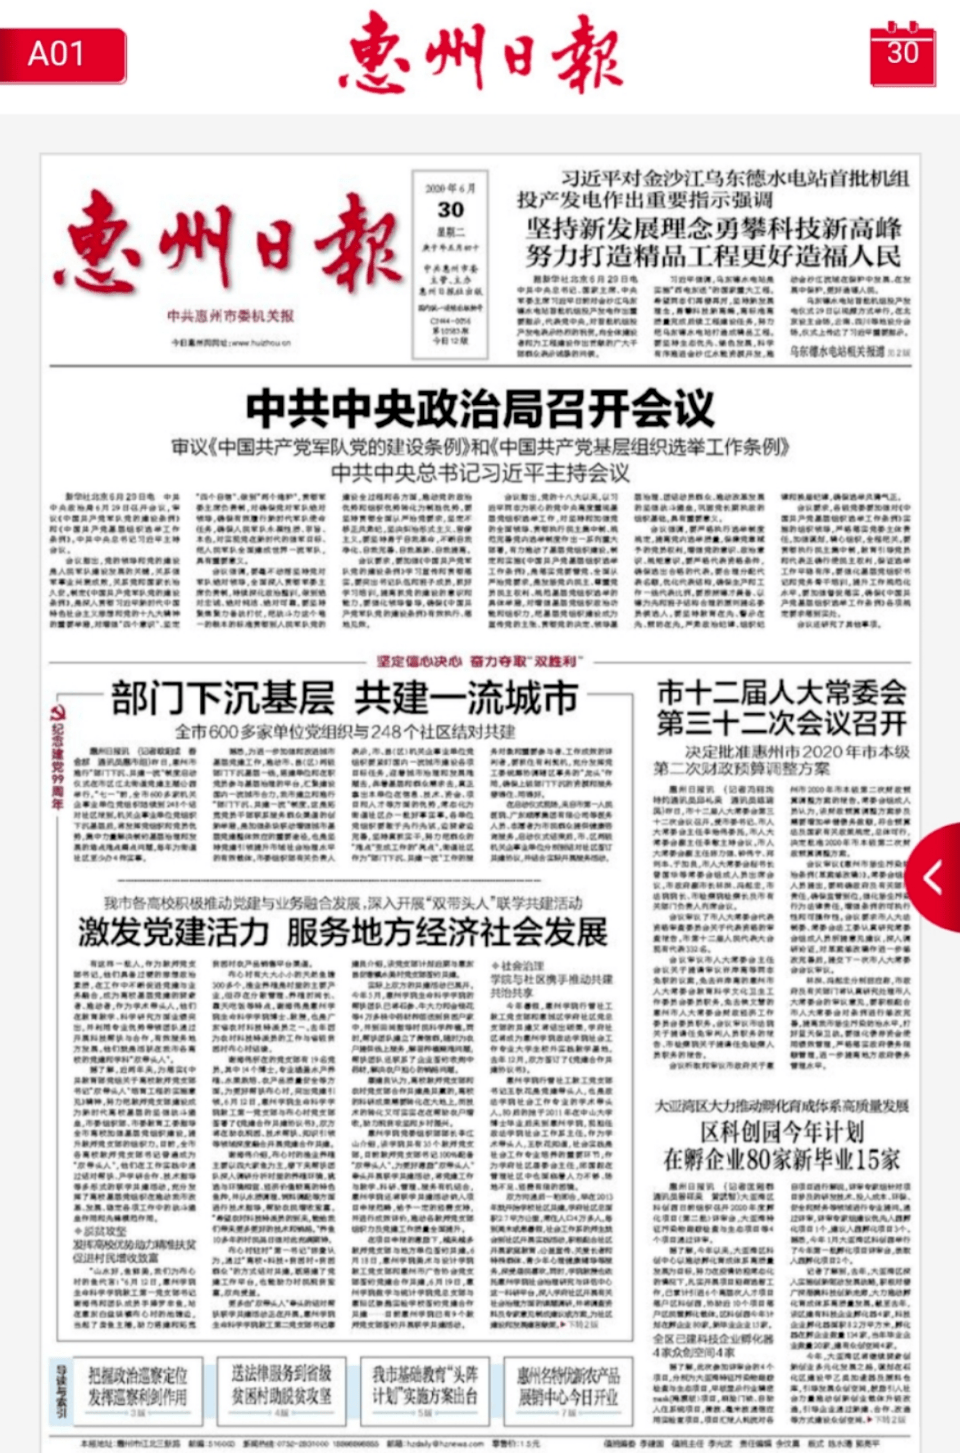 媒体城院 | 惠州日报头版:校企共建5G产业